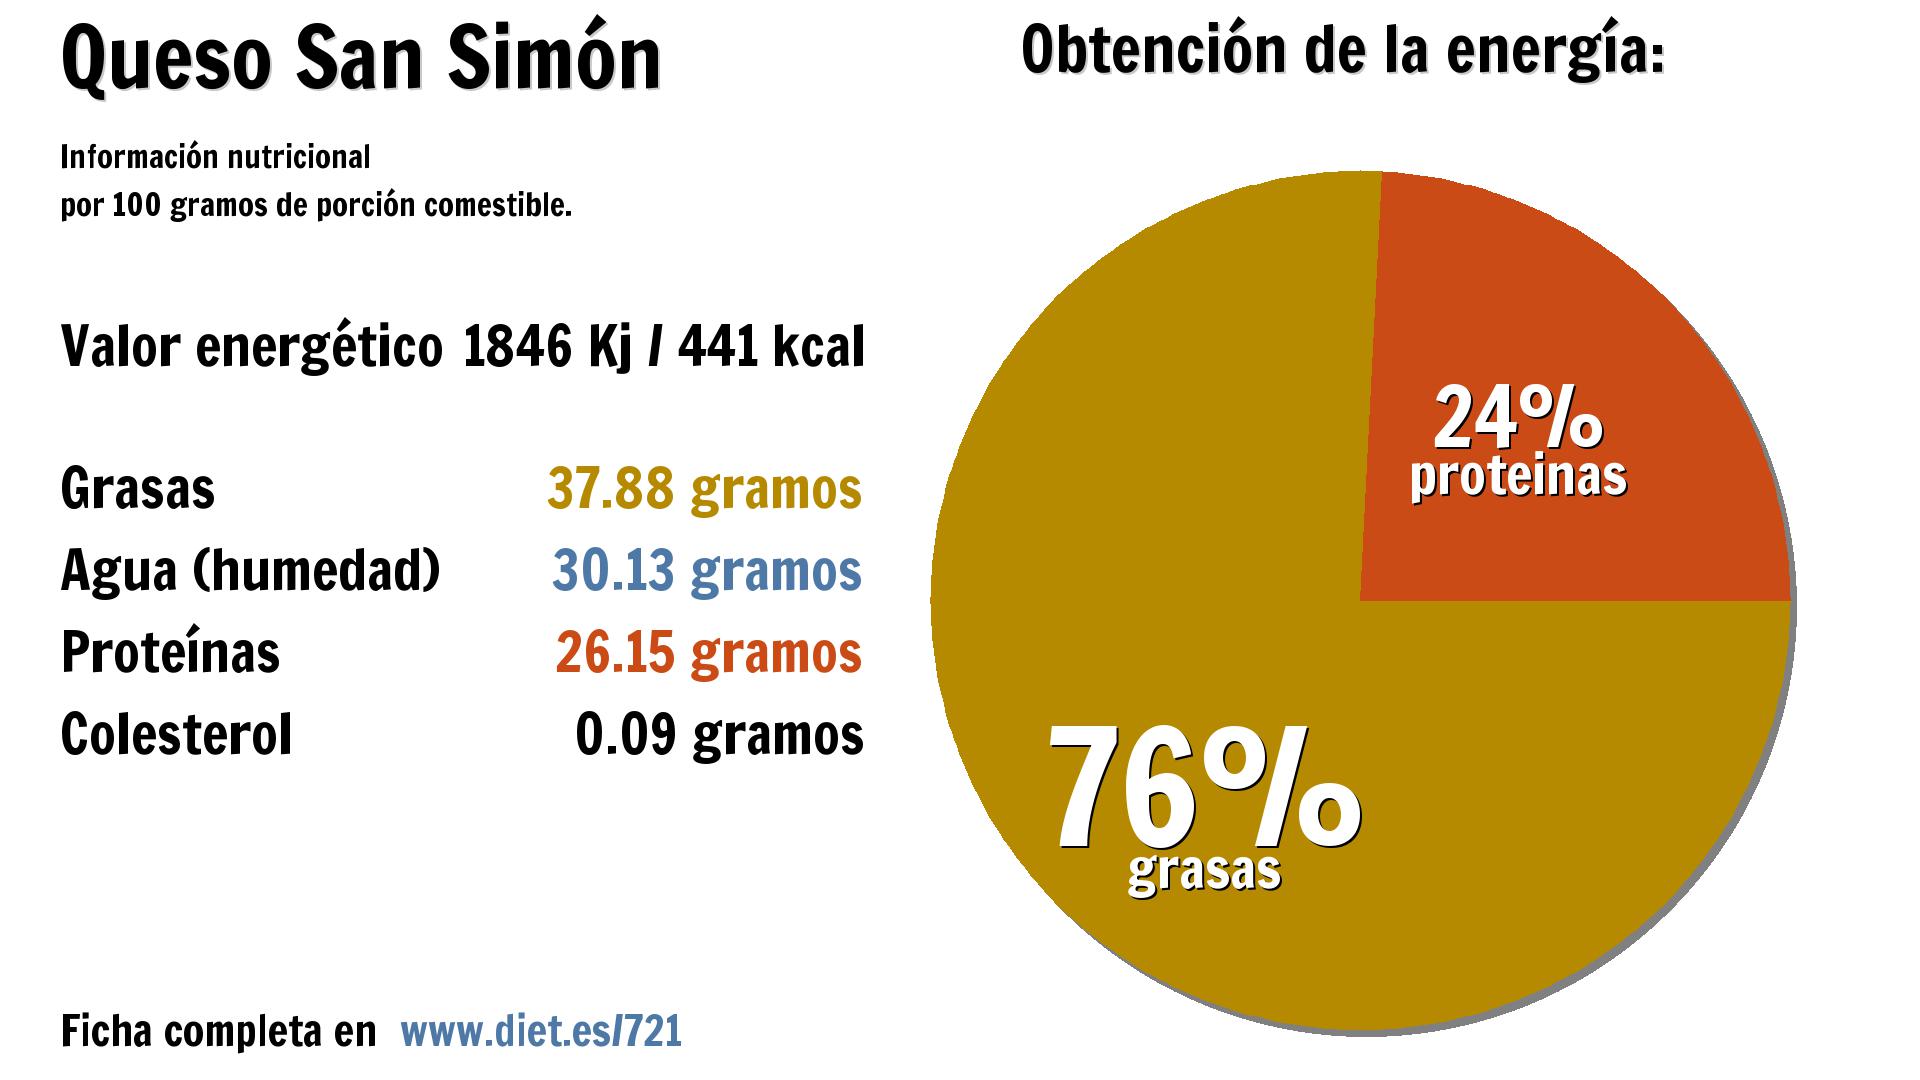 Queso San Simón: energía 1846 Kj, grasas 38 g., agua 30 g. y proteínas 26 g.